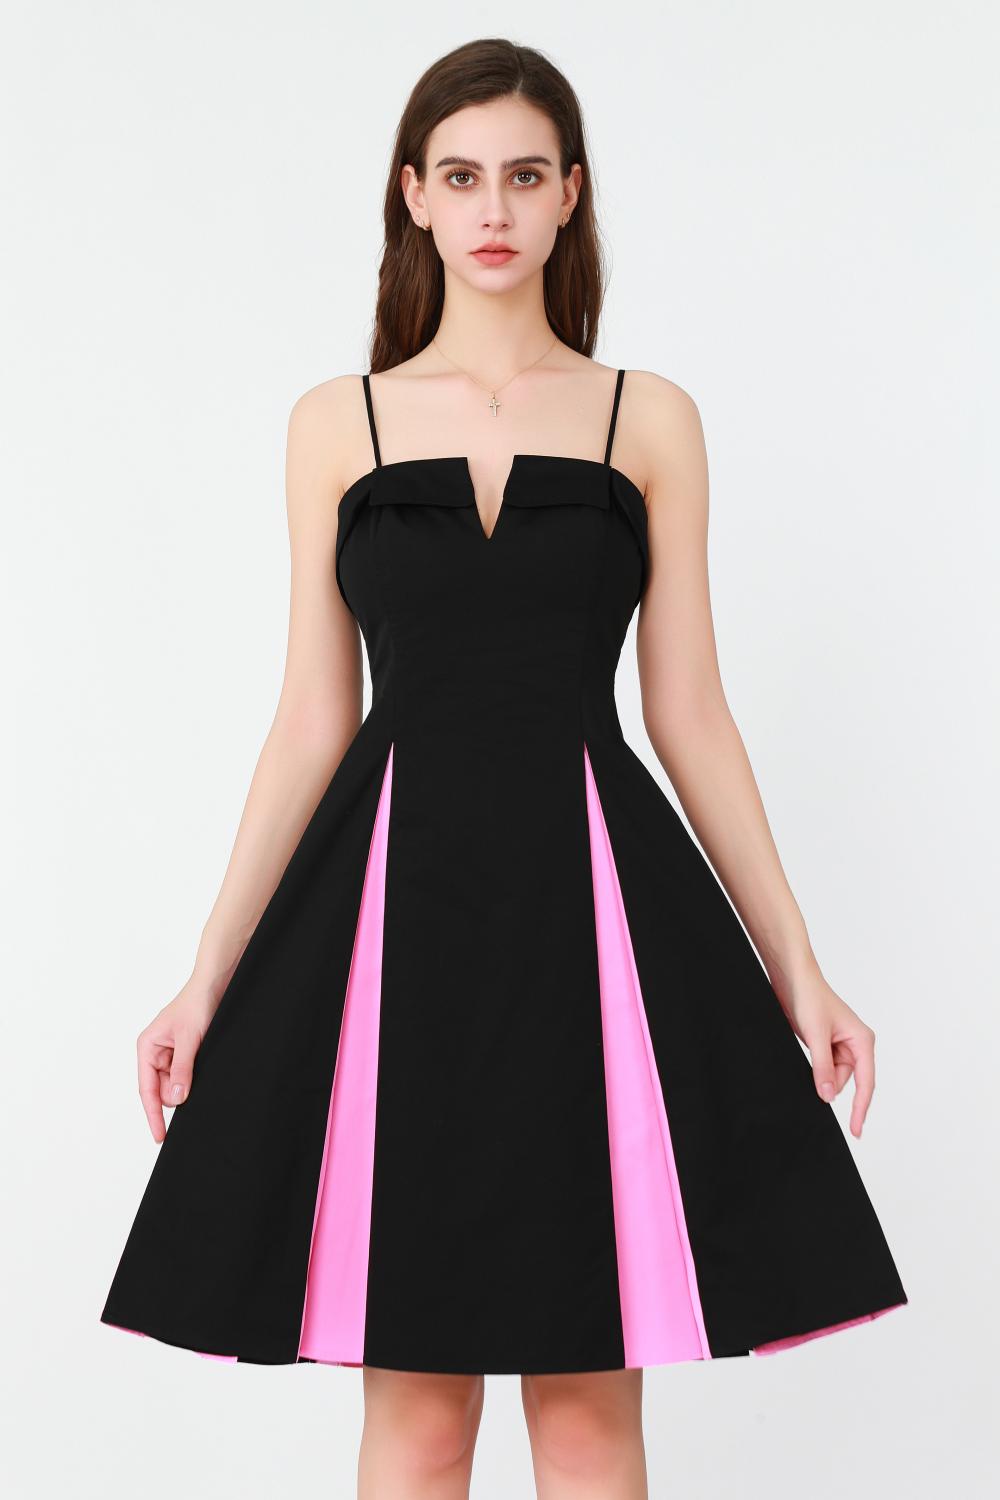 V-neckline and a High Silt Pink Dress